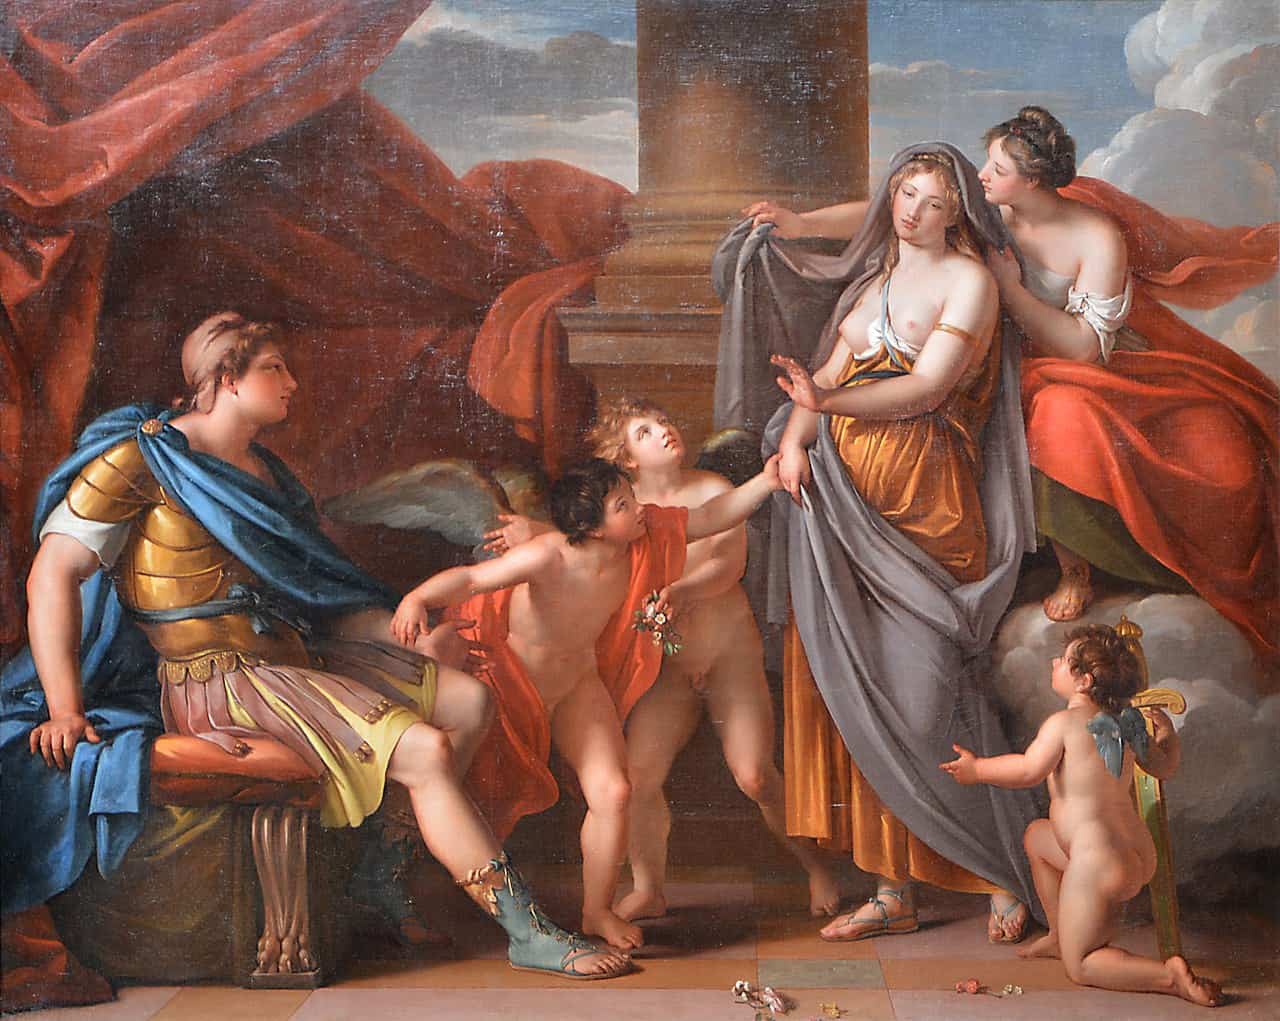 אפרודיטה מציגה את הלנה לפאריס